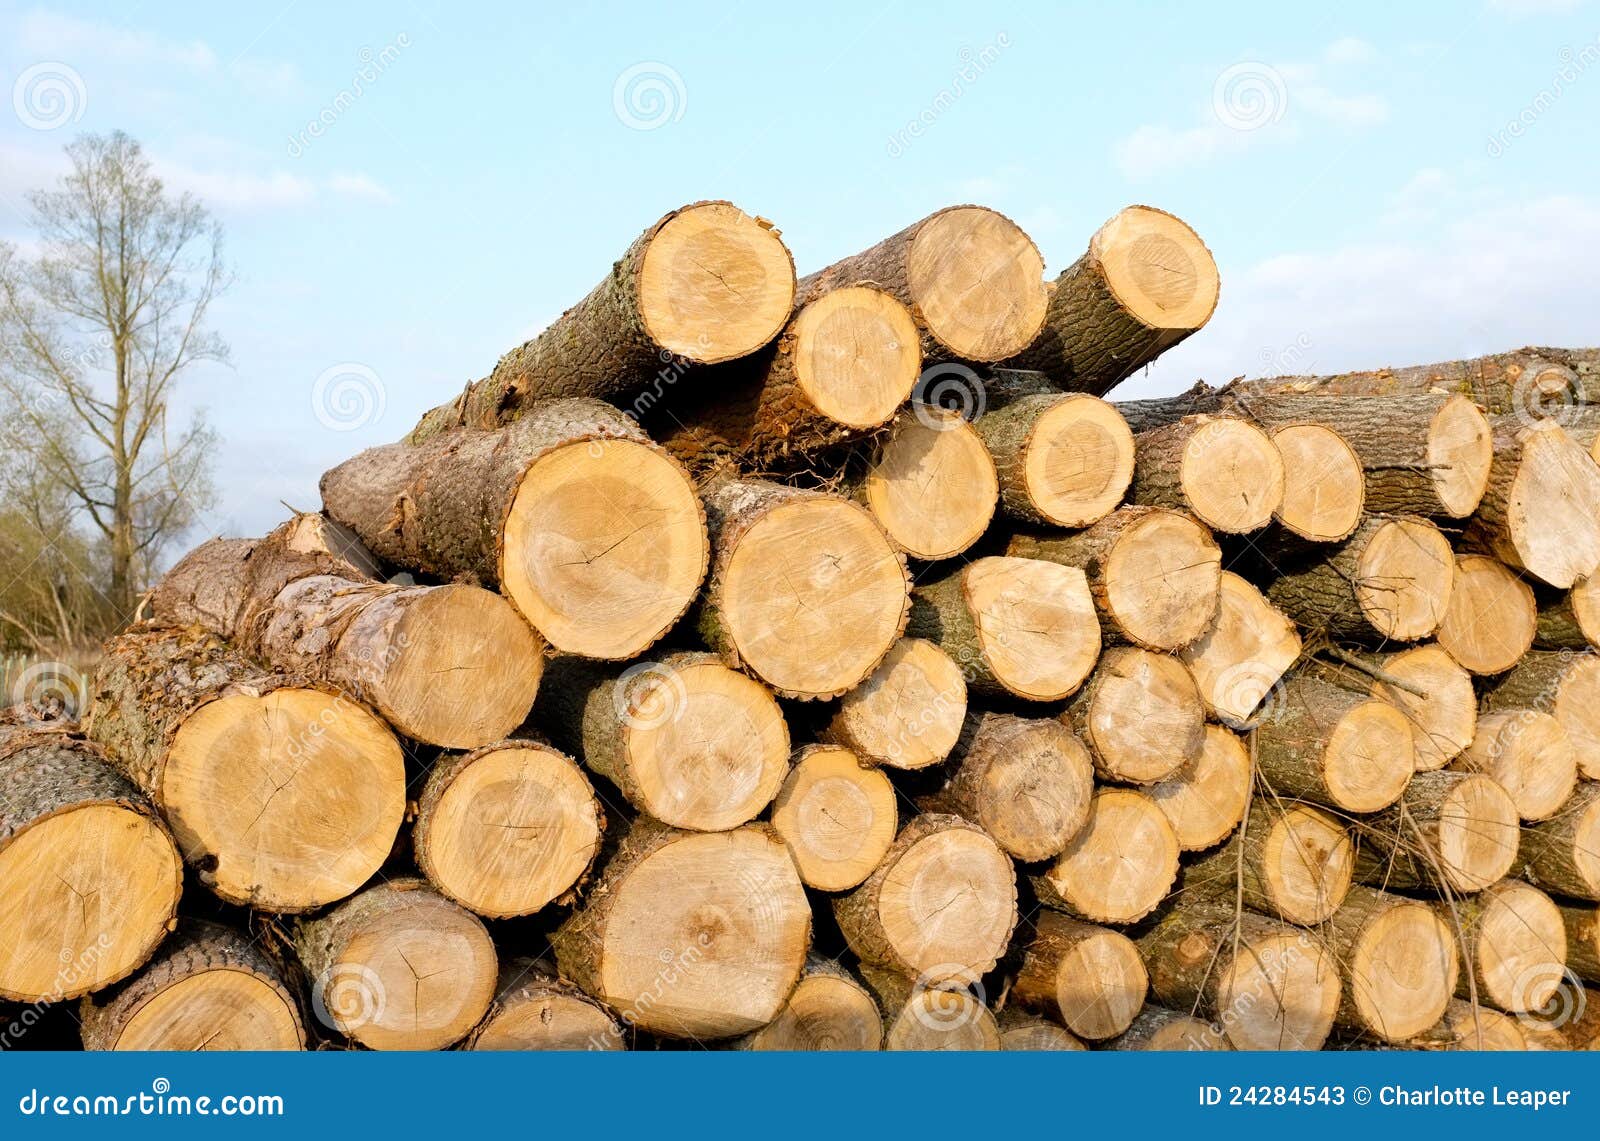 timber-log-stack-24284543.jpg